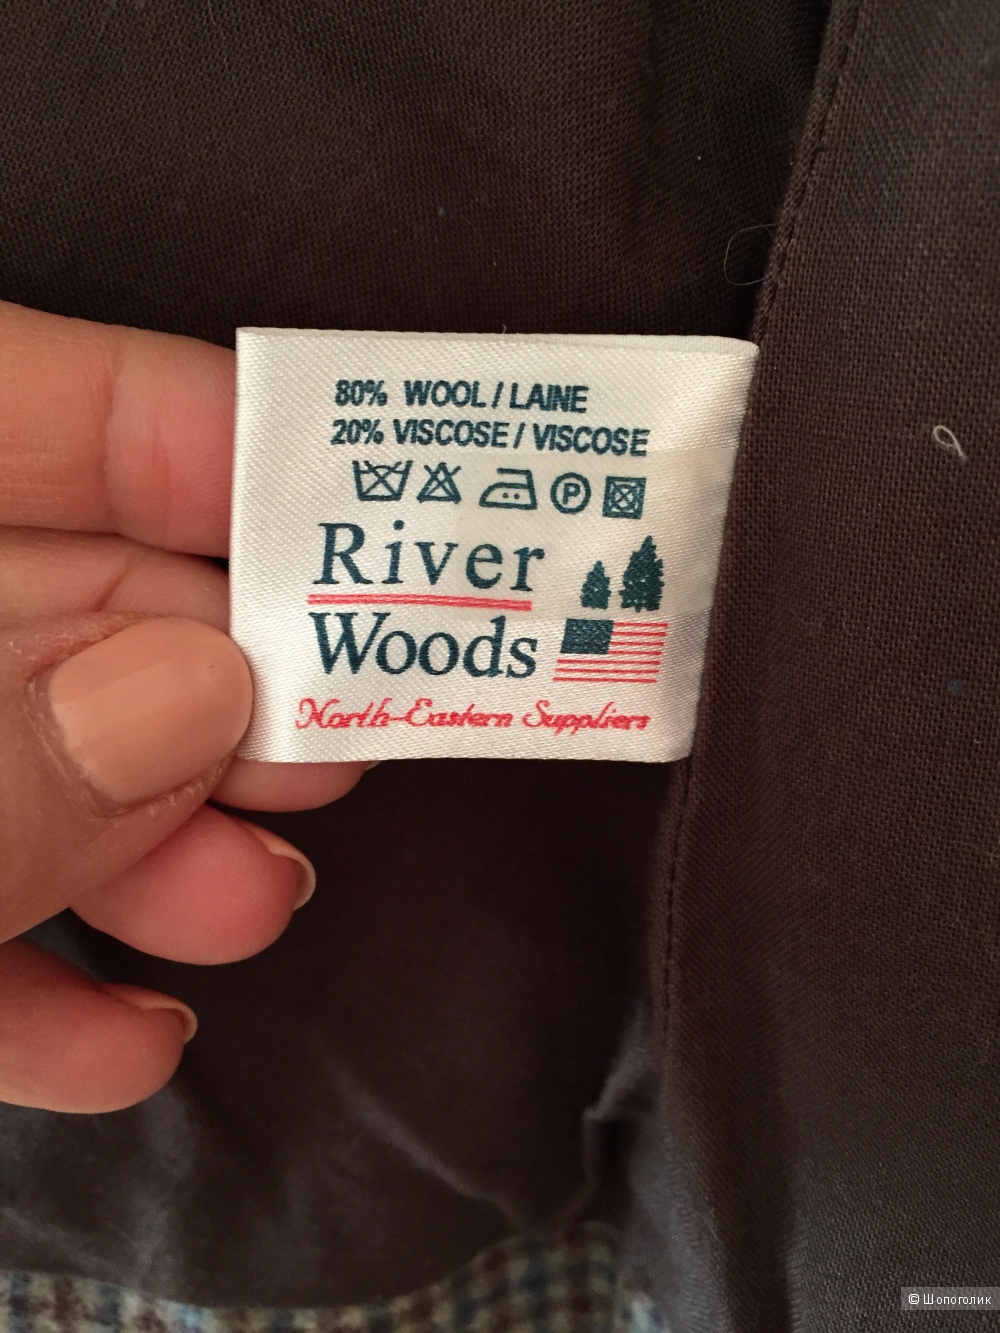 Пиджак люксовой бельгийской марки River Woods размер 40 французский 46 российский.